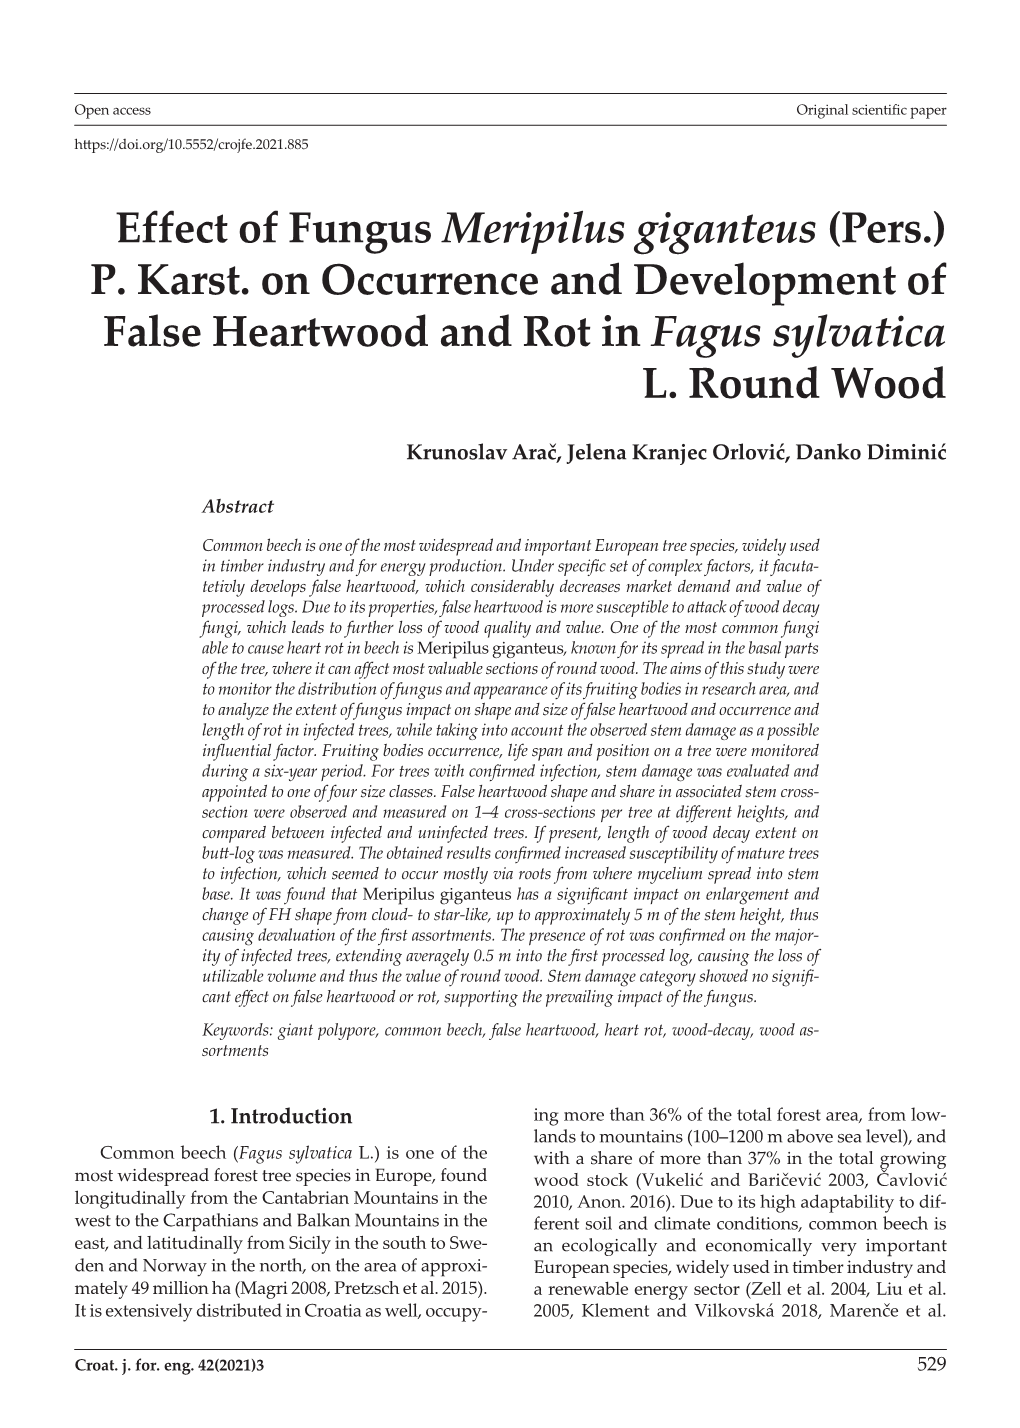 Effect of Fungus Meripilus Giganteus (Pers.) P